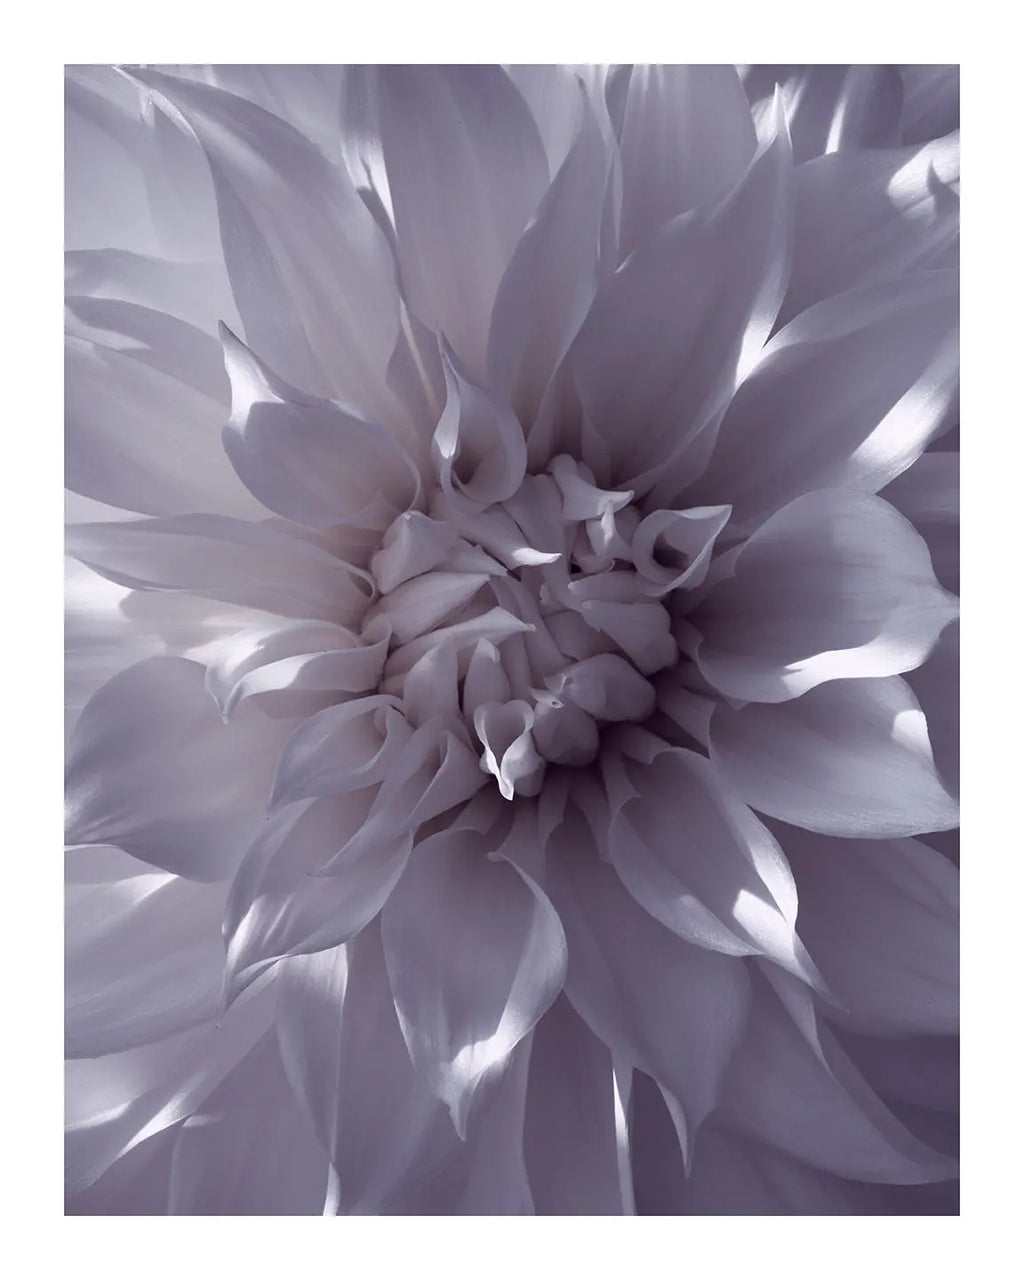 Burning White Light - flower prints ELENA DRAGOI